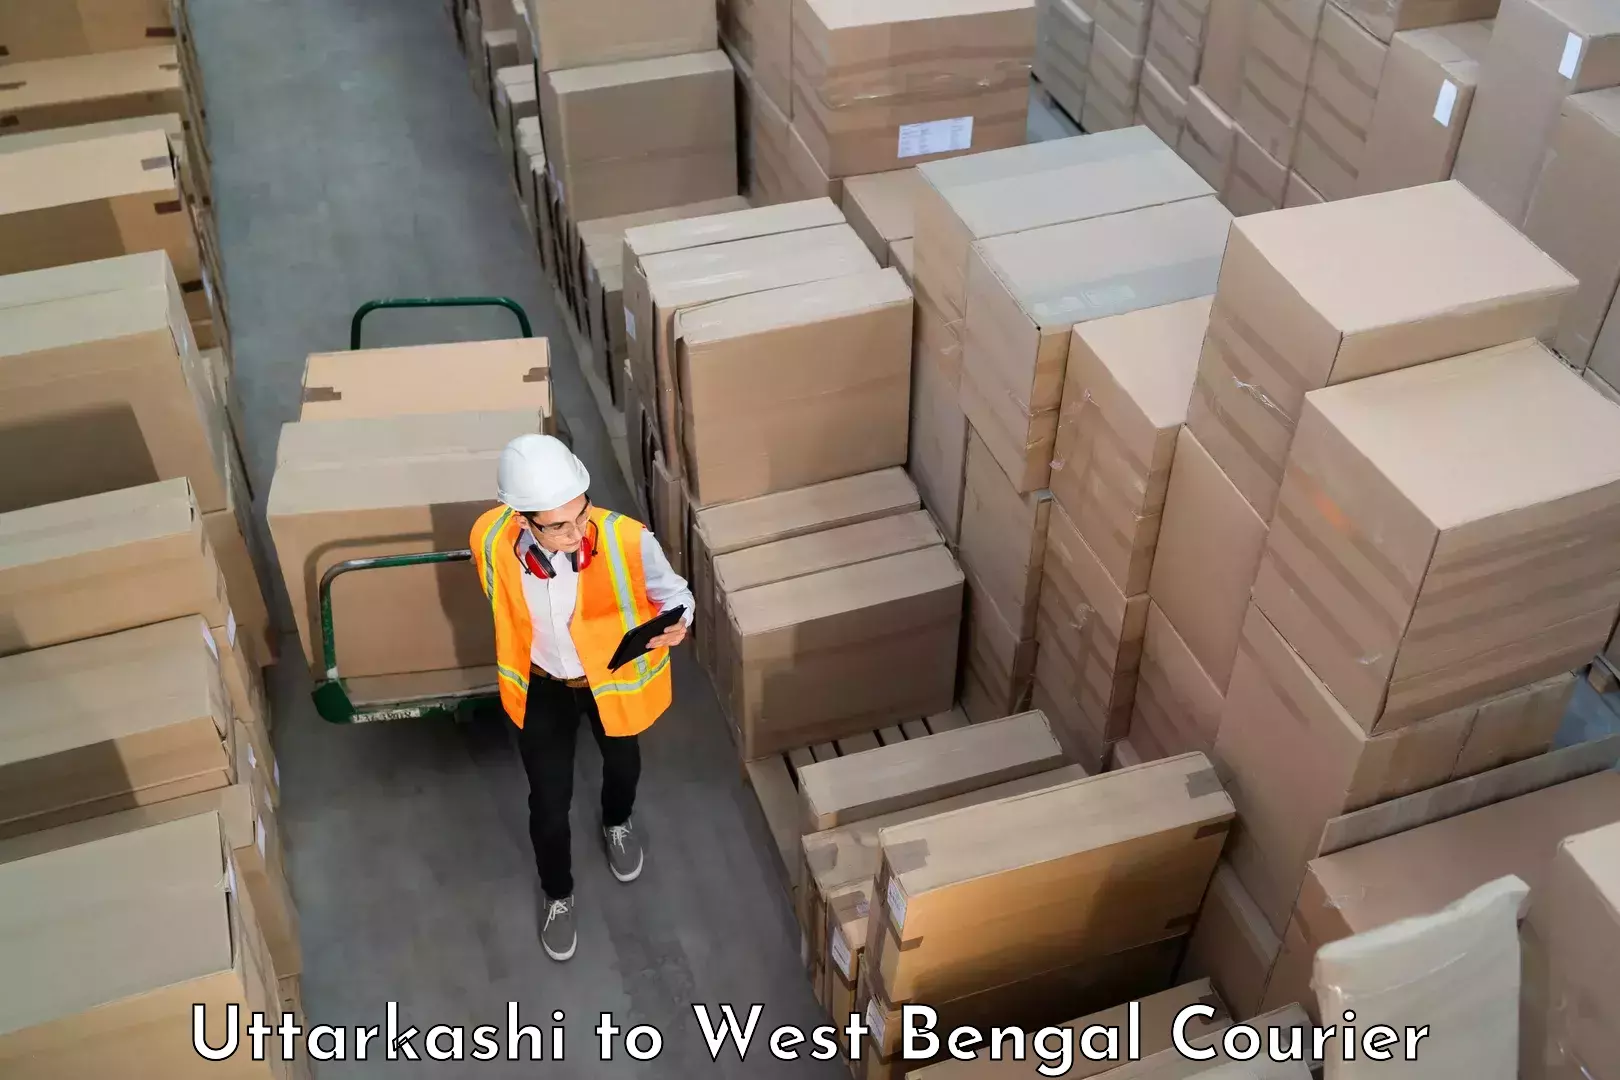 Luggage transfer service Uttarkashi to West Bengal